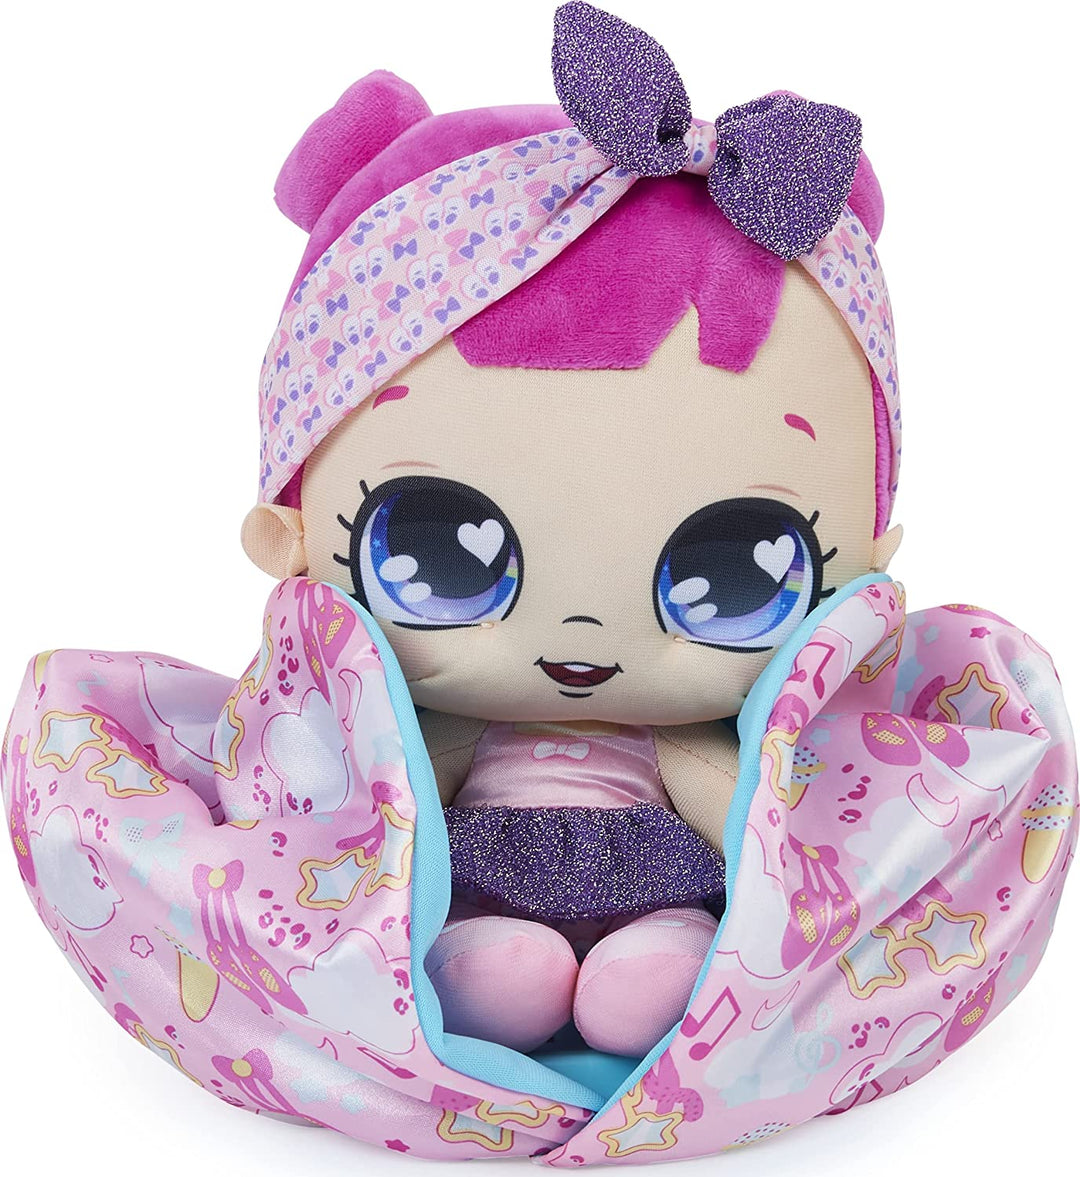 Magic Blanket Babies Surprise Plush Baby Doll con más de 80 sonidos y reacciones,